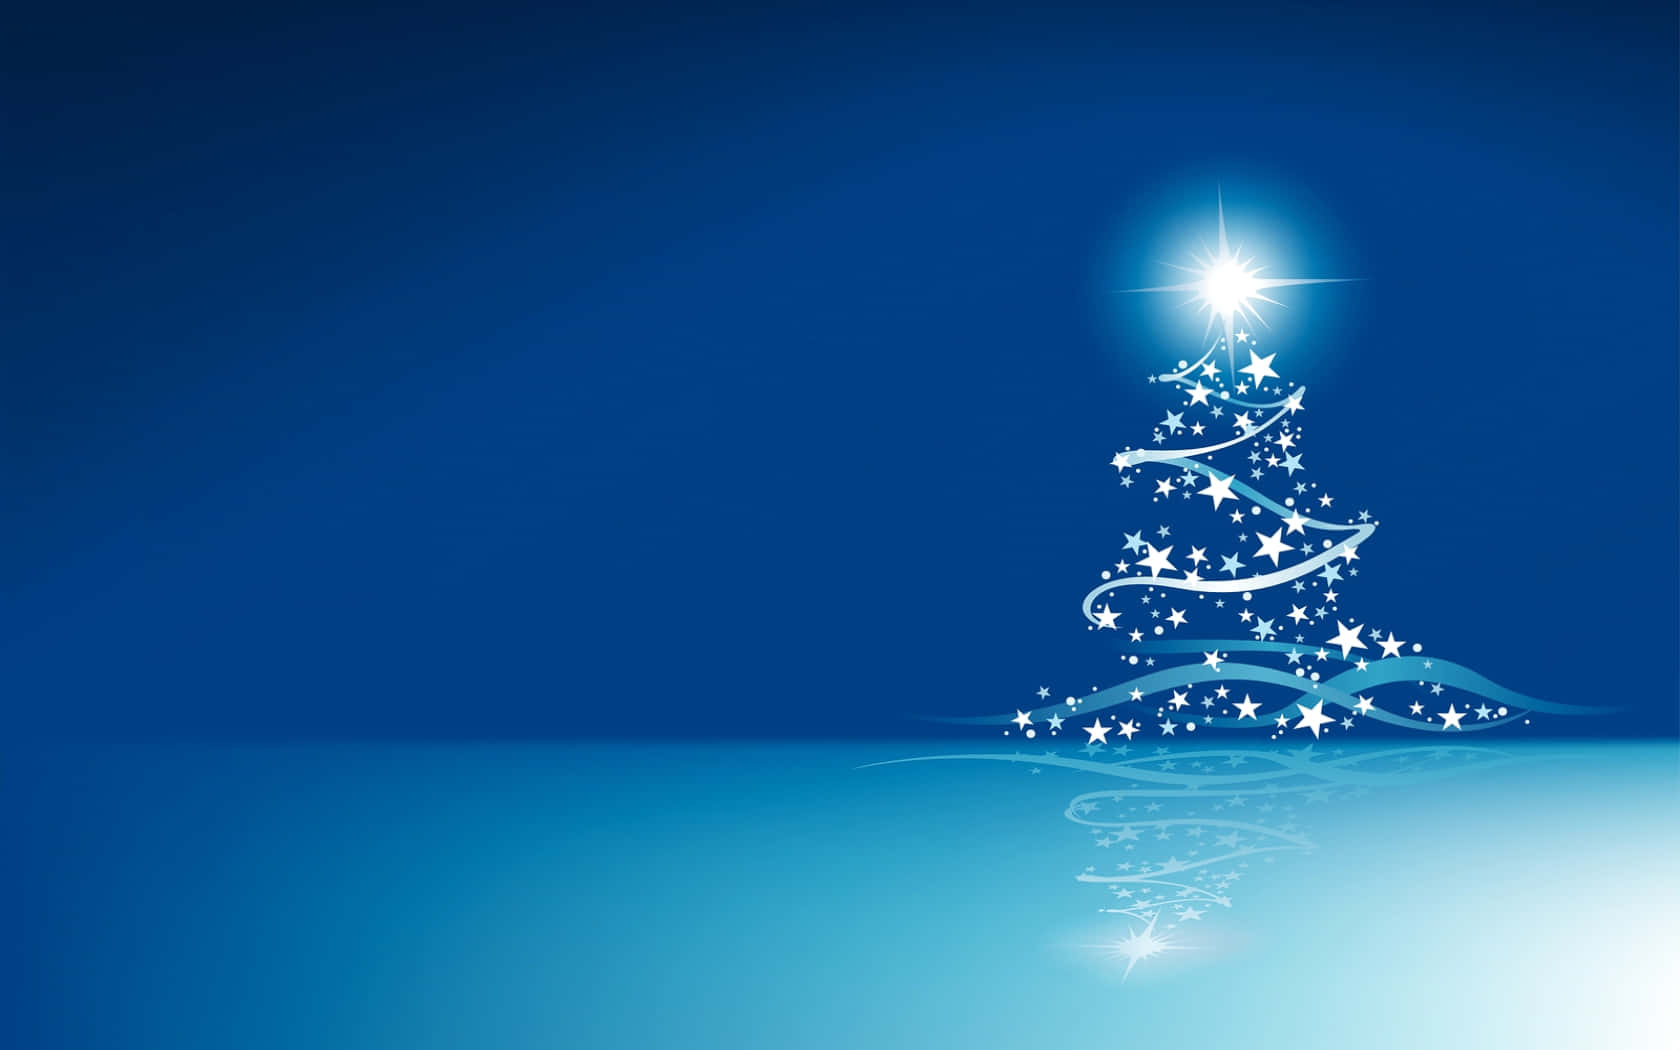 Árbolde Navidad De Estrellas En Un Fondo Temático De Navidad En Azul.